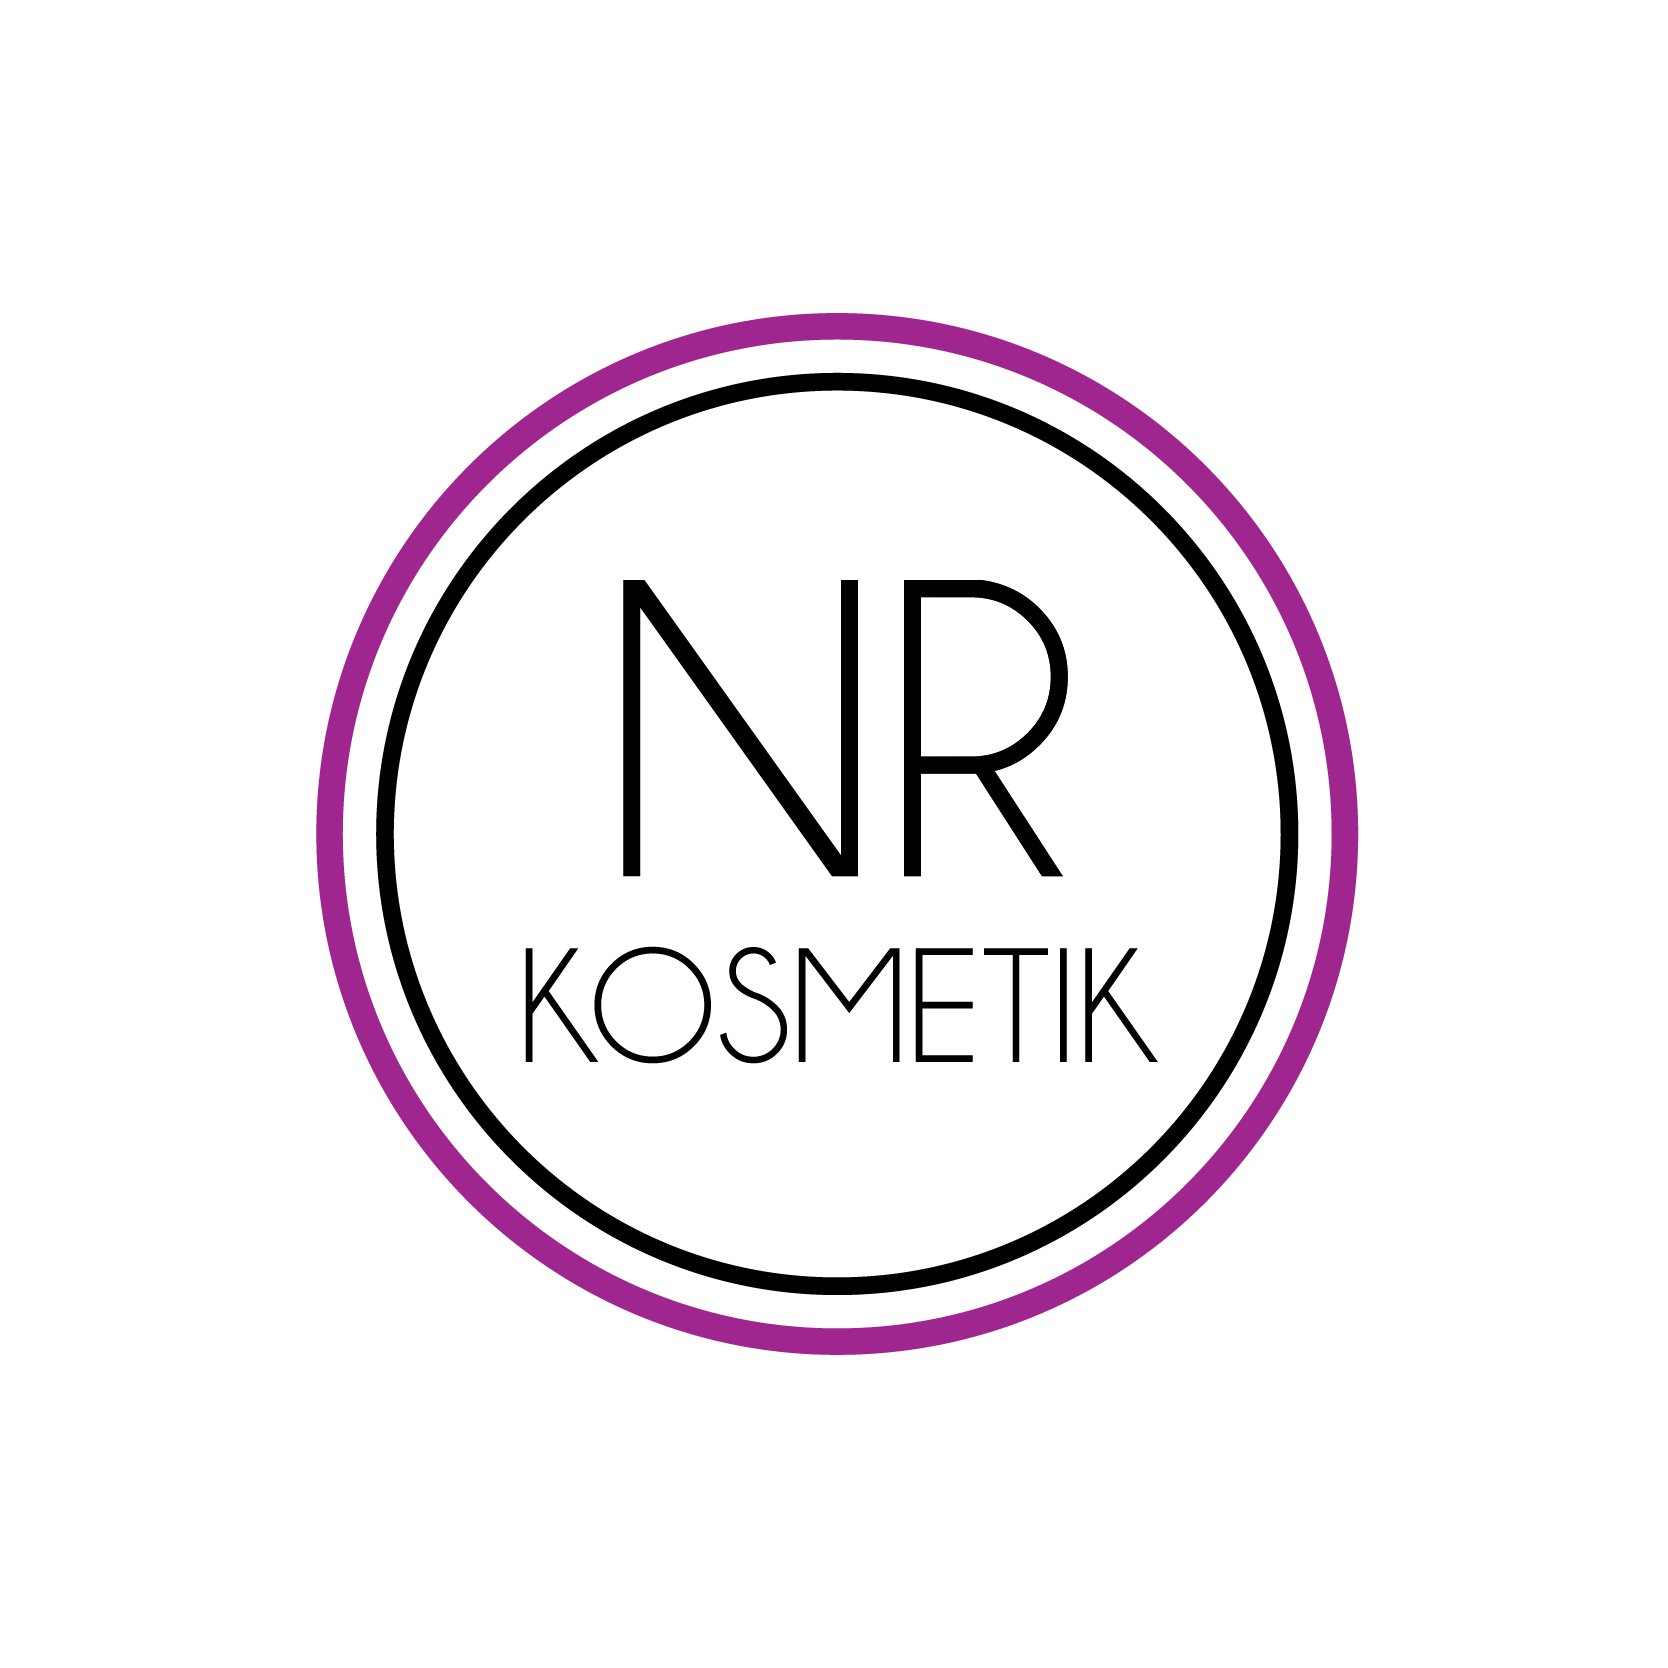 NR Kosmetik ApS logo på kosmetik hjemmeside, med salg af gelpolish, gallack, eyelash og vippeprodukter